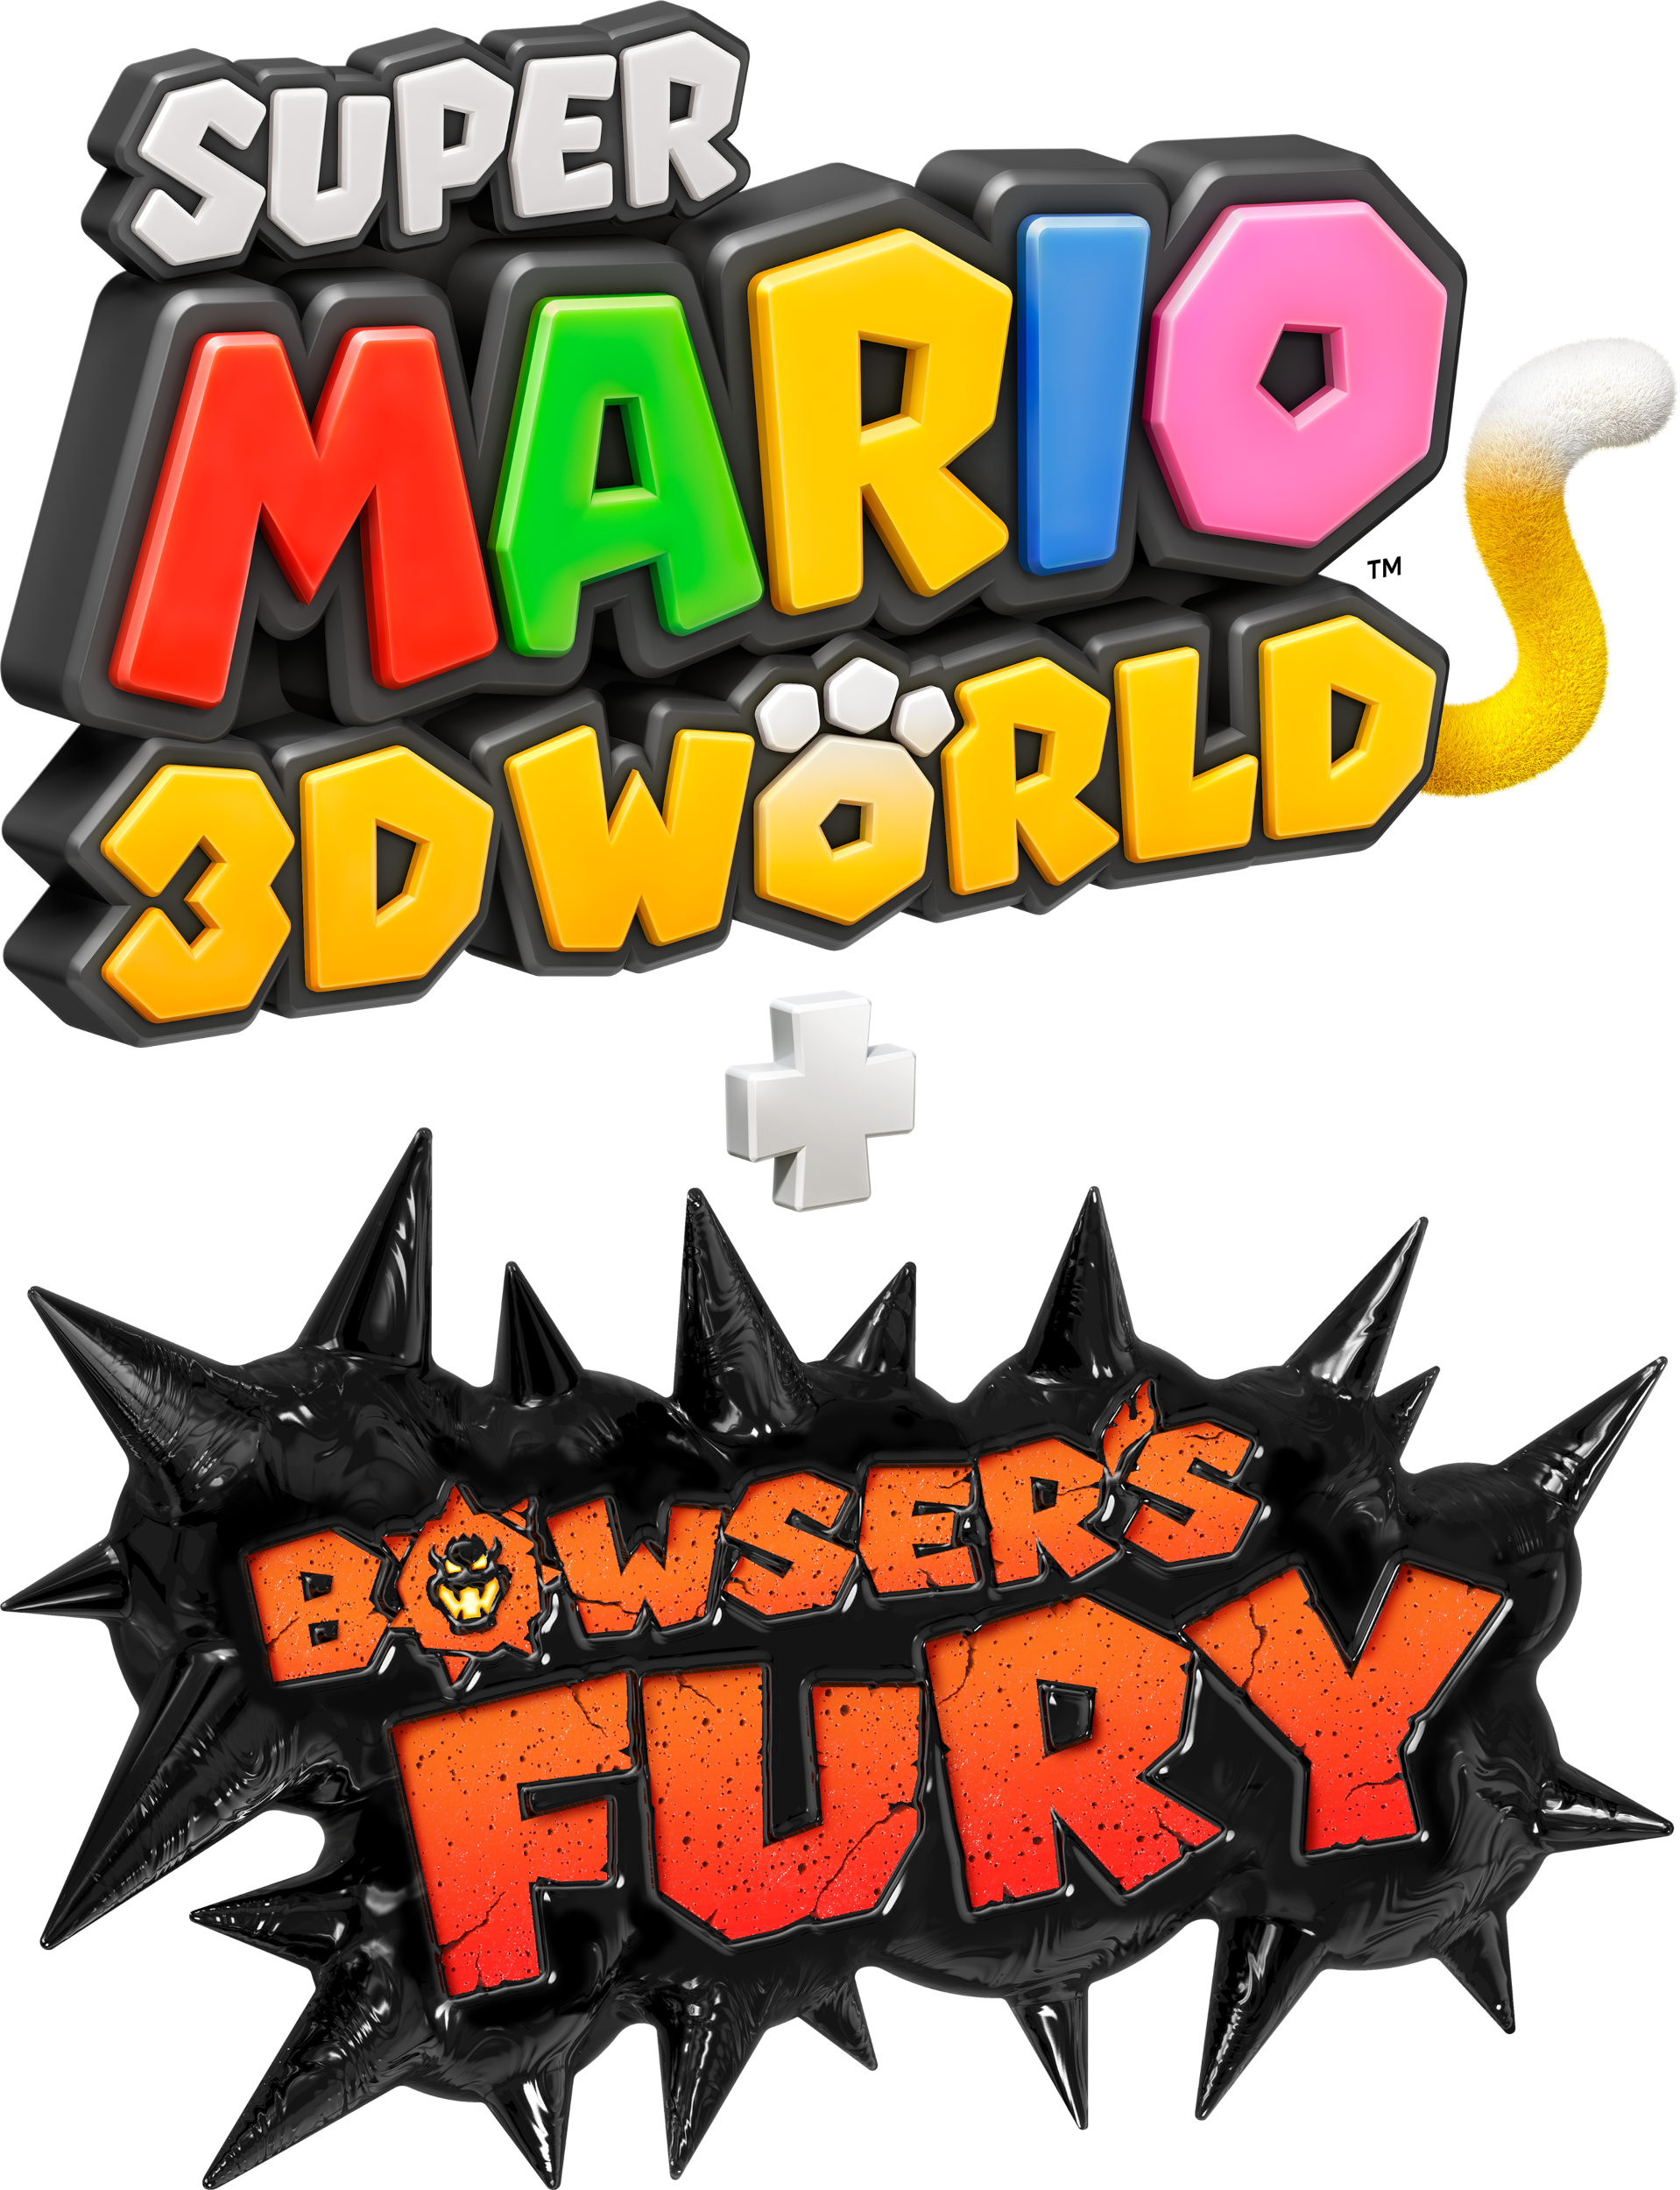 Super mario 3d world bowsers. Super Mario 3d World + Bowser's Fury. Super Mario 3d World. Super Mario 3d World Bowser's Fury Yuzu. Super Mario 3d World + Bowser's Fury ПК.